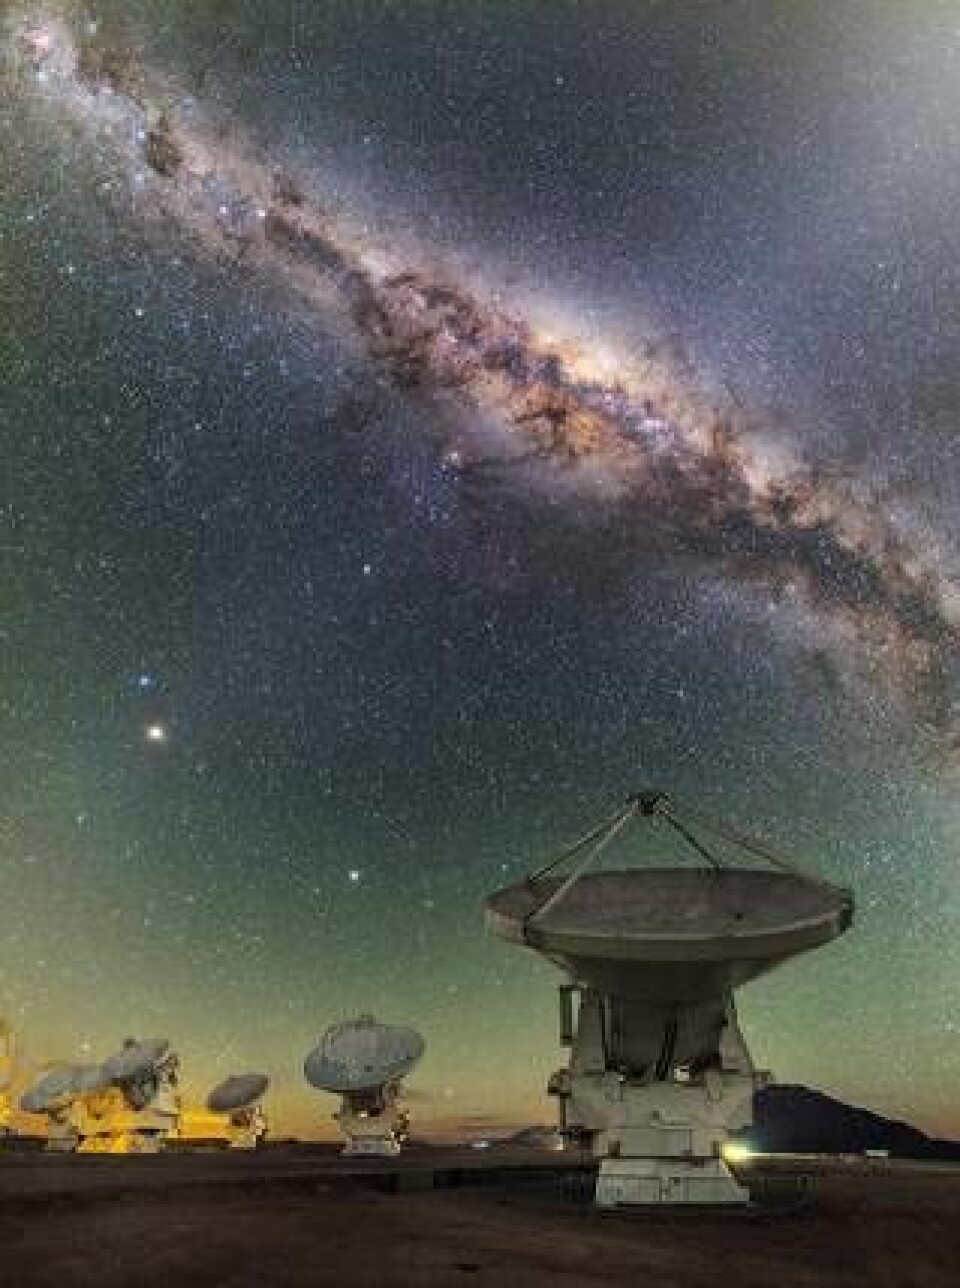 Alma-teleskopet i Chile. Foto: ESO/B. Tafreshi, licens: CC